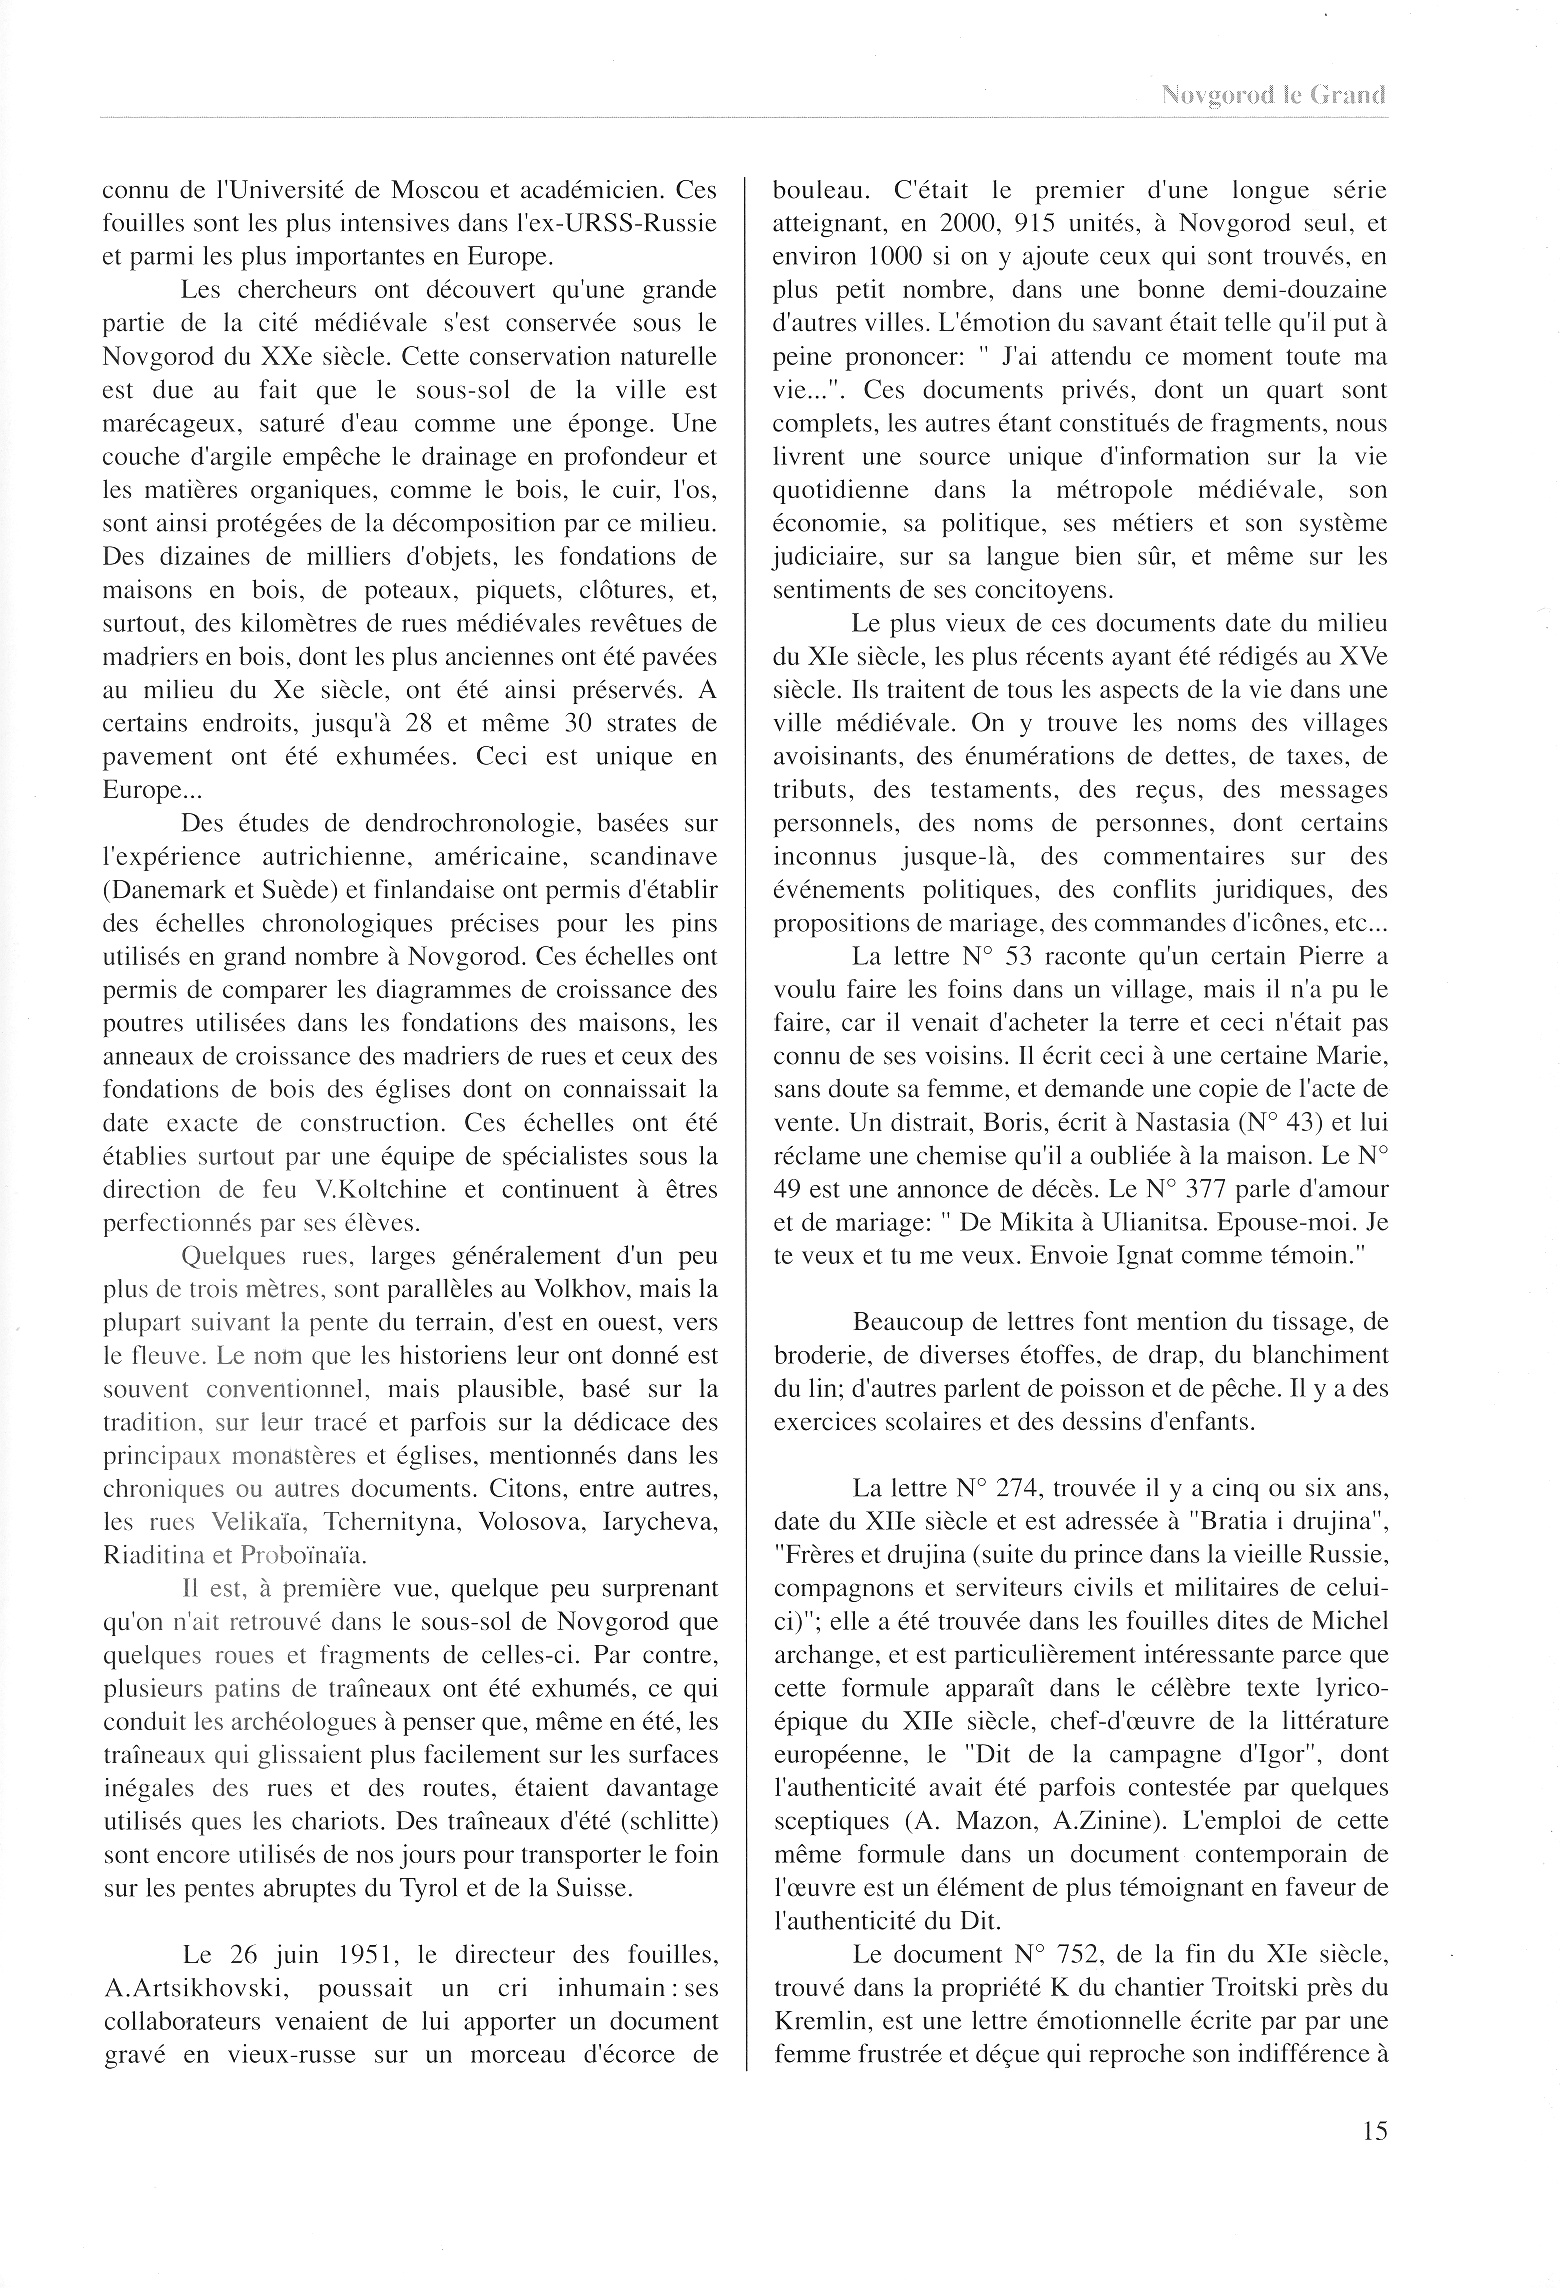 FPPR Revue 01 2002 17. Page 15. Novgorod le Grand. Anatomie d|une métropole médiévale russe par Jean Blankoff